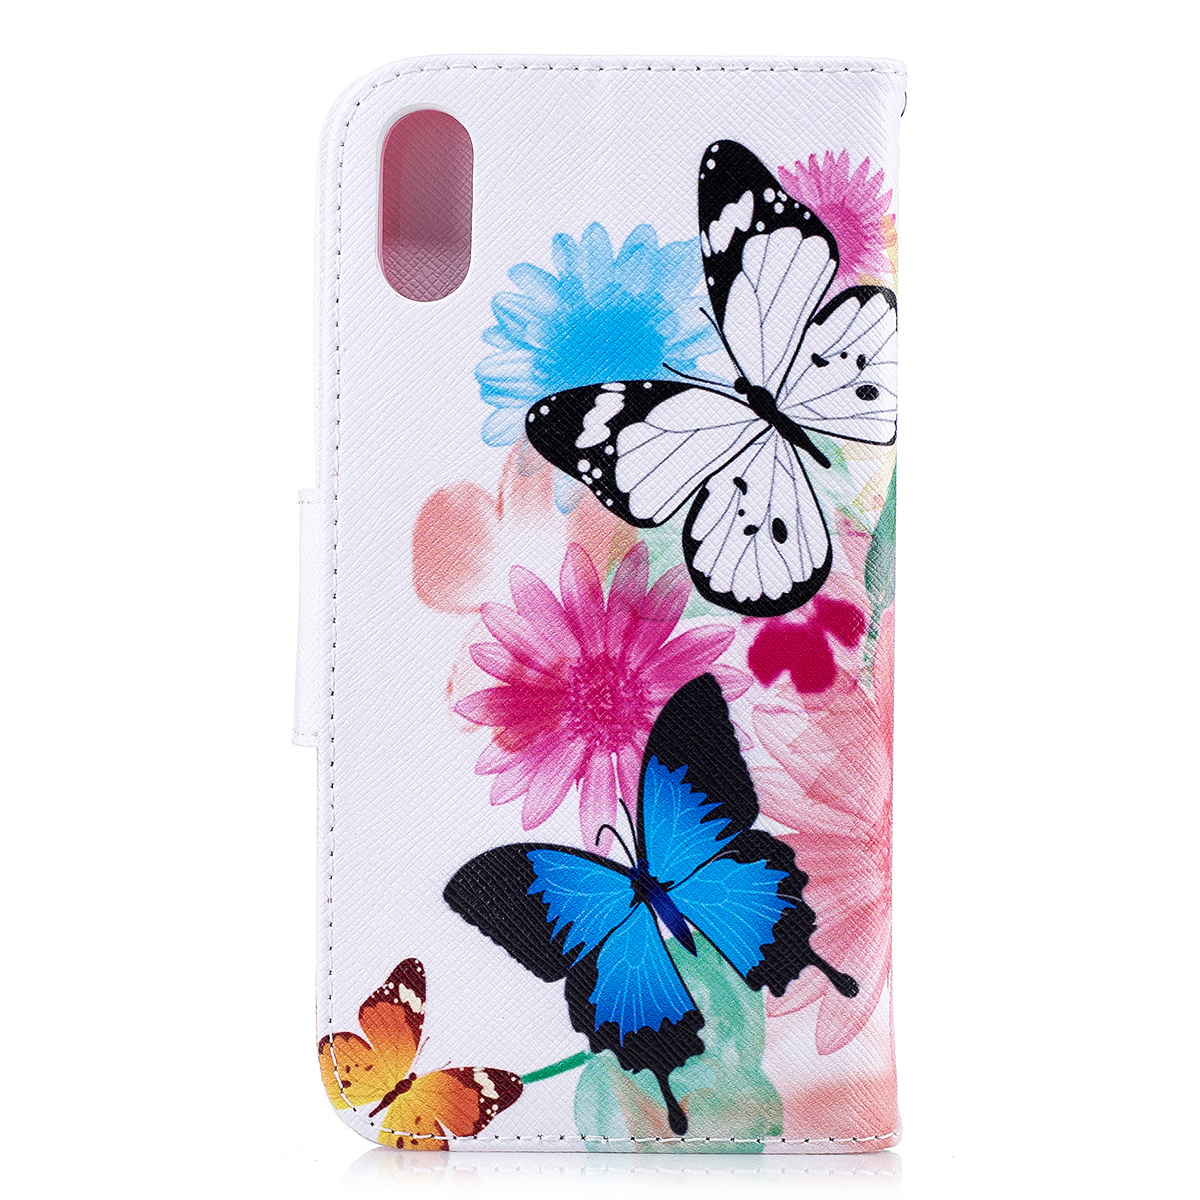 Läderfodral med ställ/kortplats, fjärilar, iPhone XR